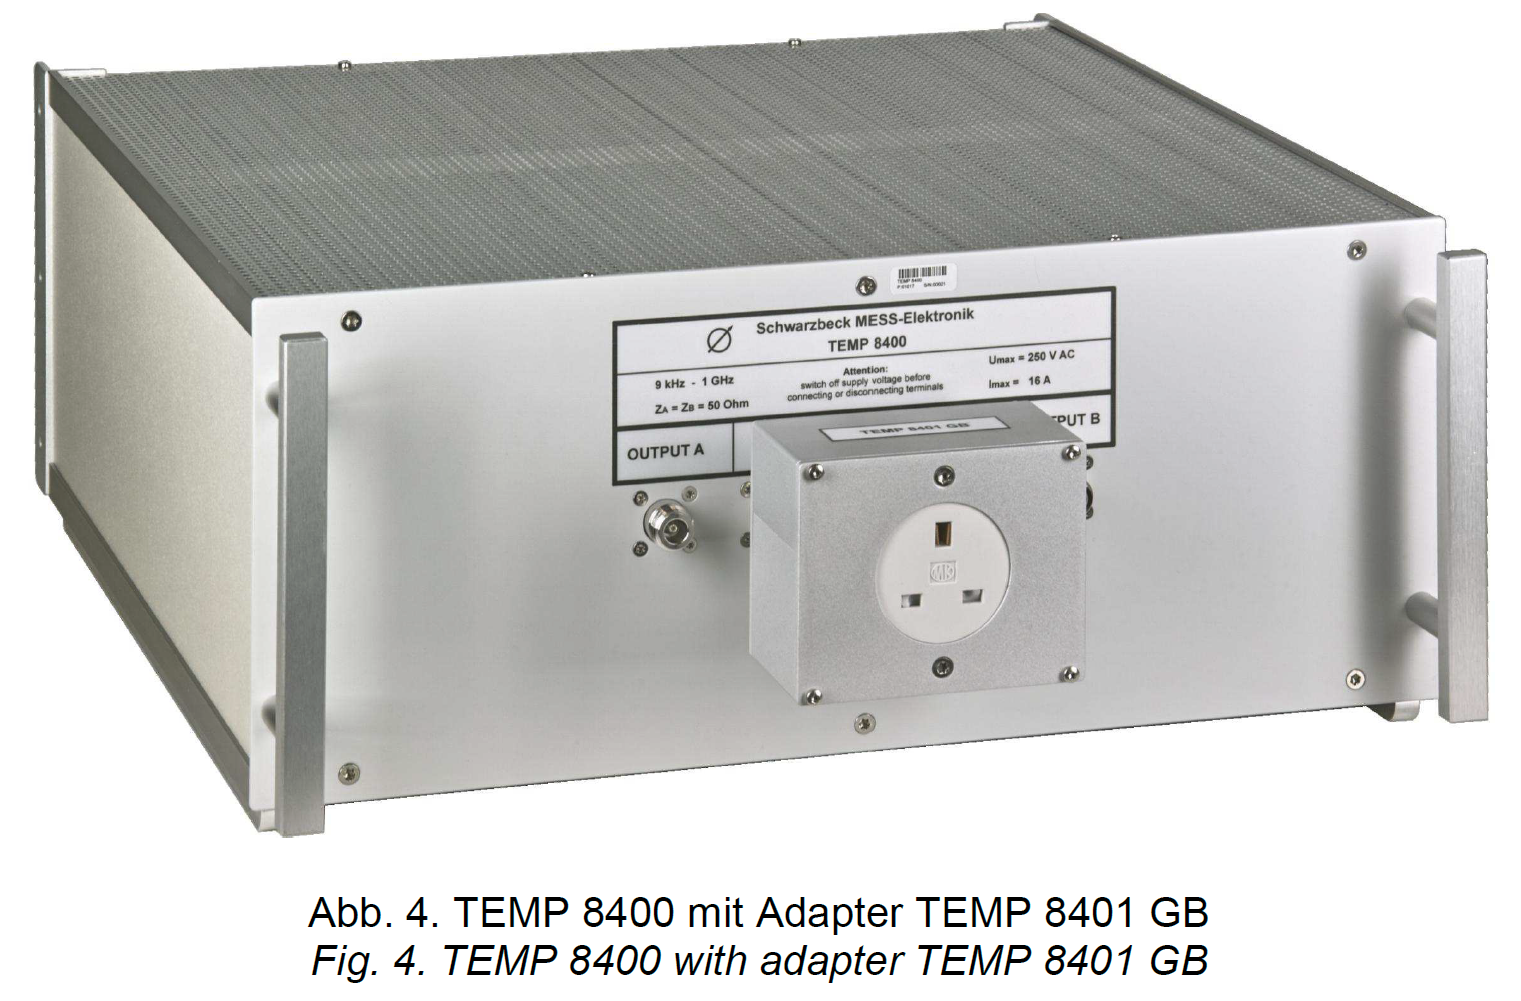 TEMP 8400, 9 kHz - 1 GHz, TEMPEST LISN (Line Impedance